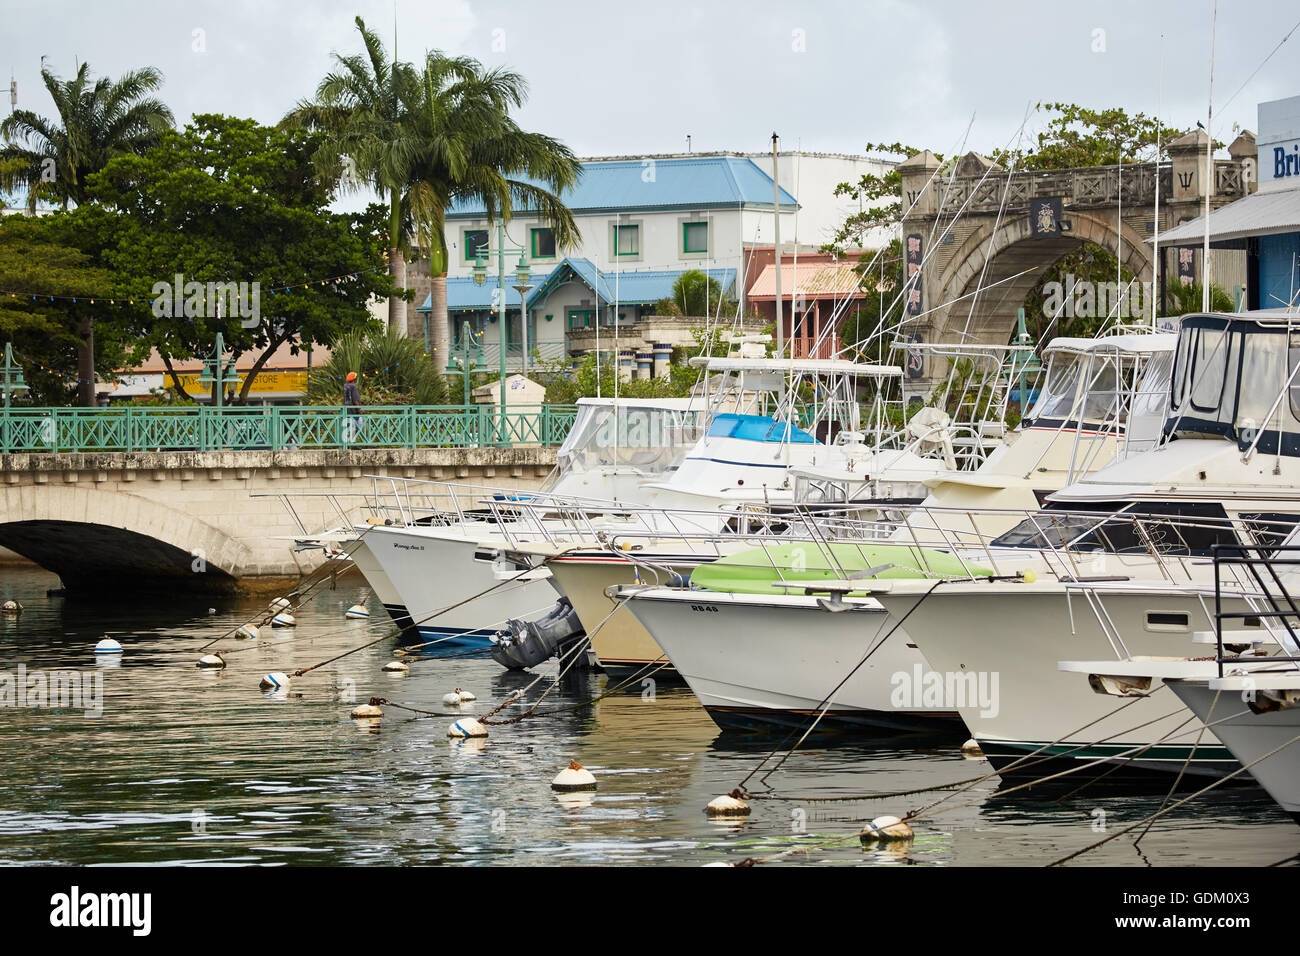 Die kleinen Antillen Barbados Pfarrkirche Saint Michael West Indies Bridgetown Careenage Marina boat Yaught Harbour Yacht Eleganz sal Stockfoto